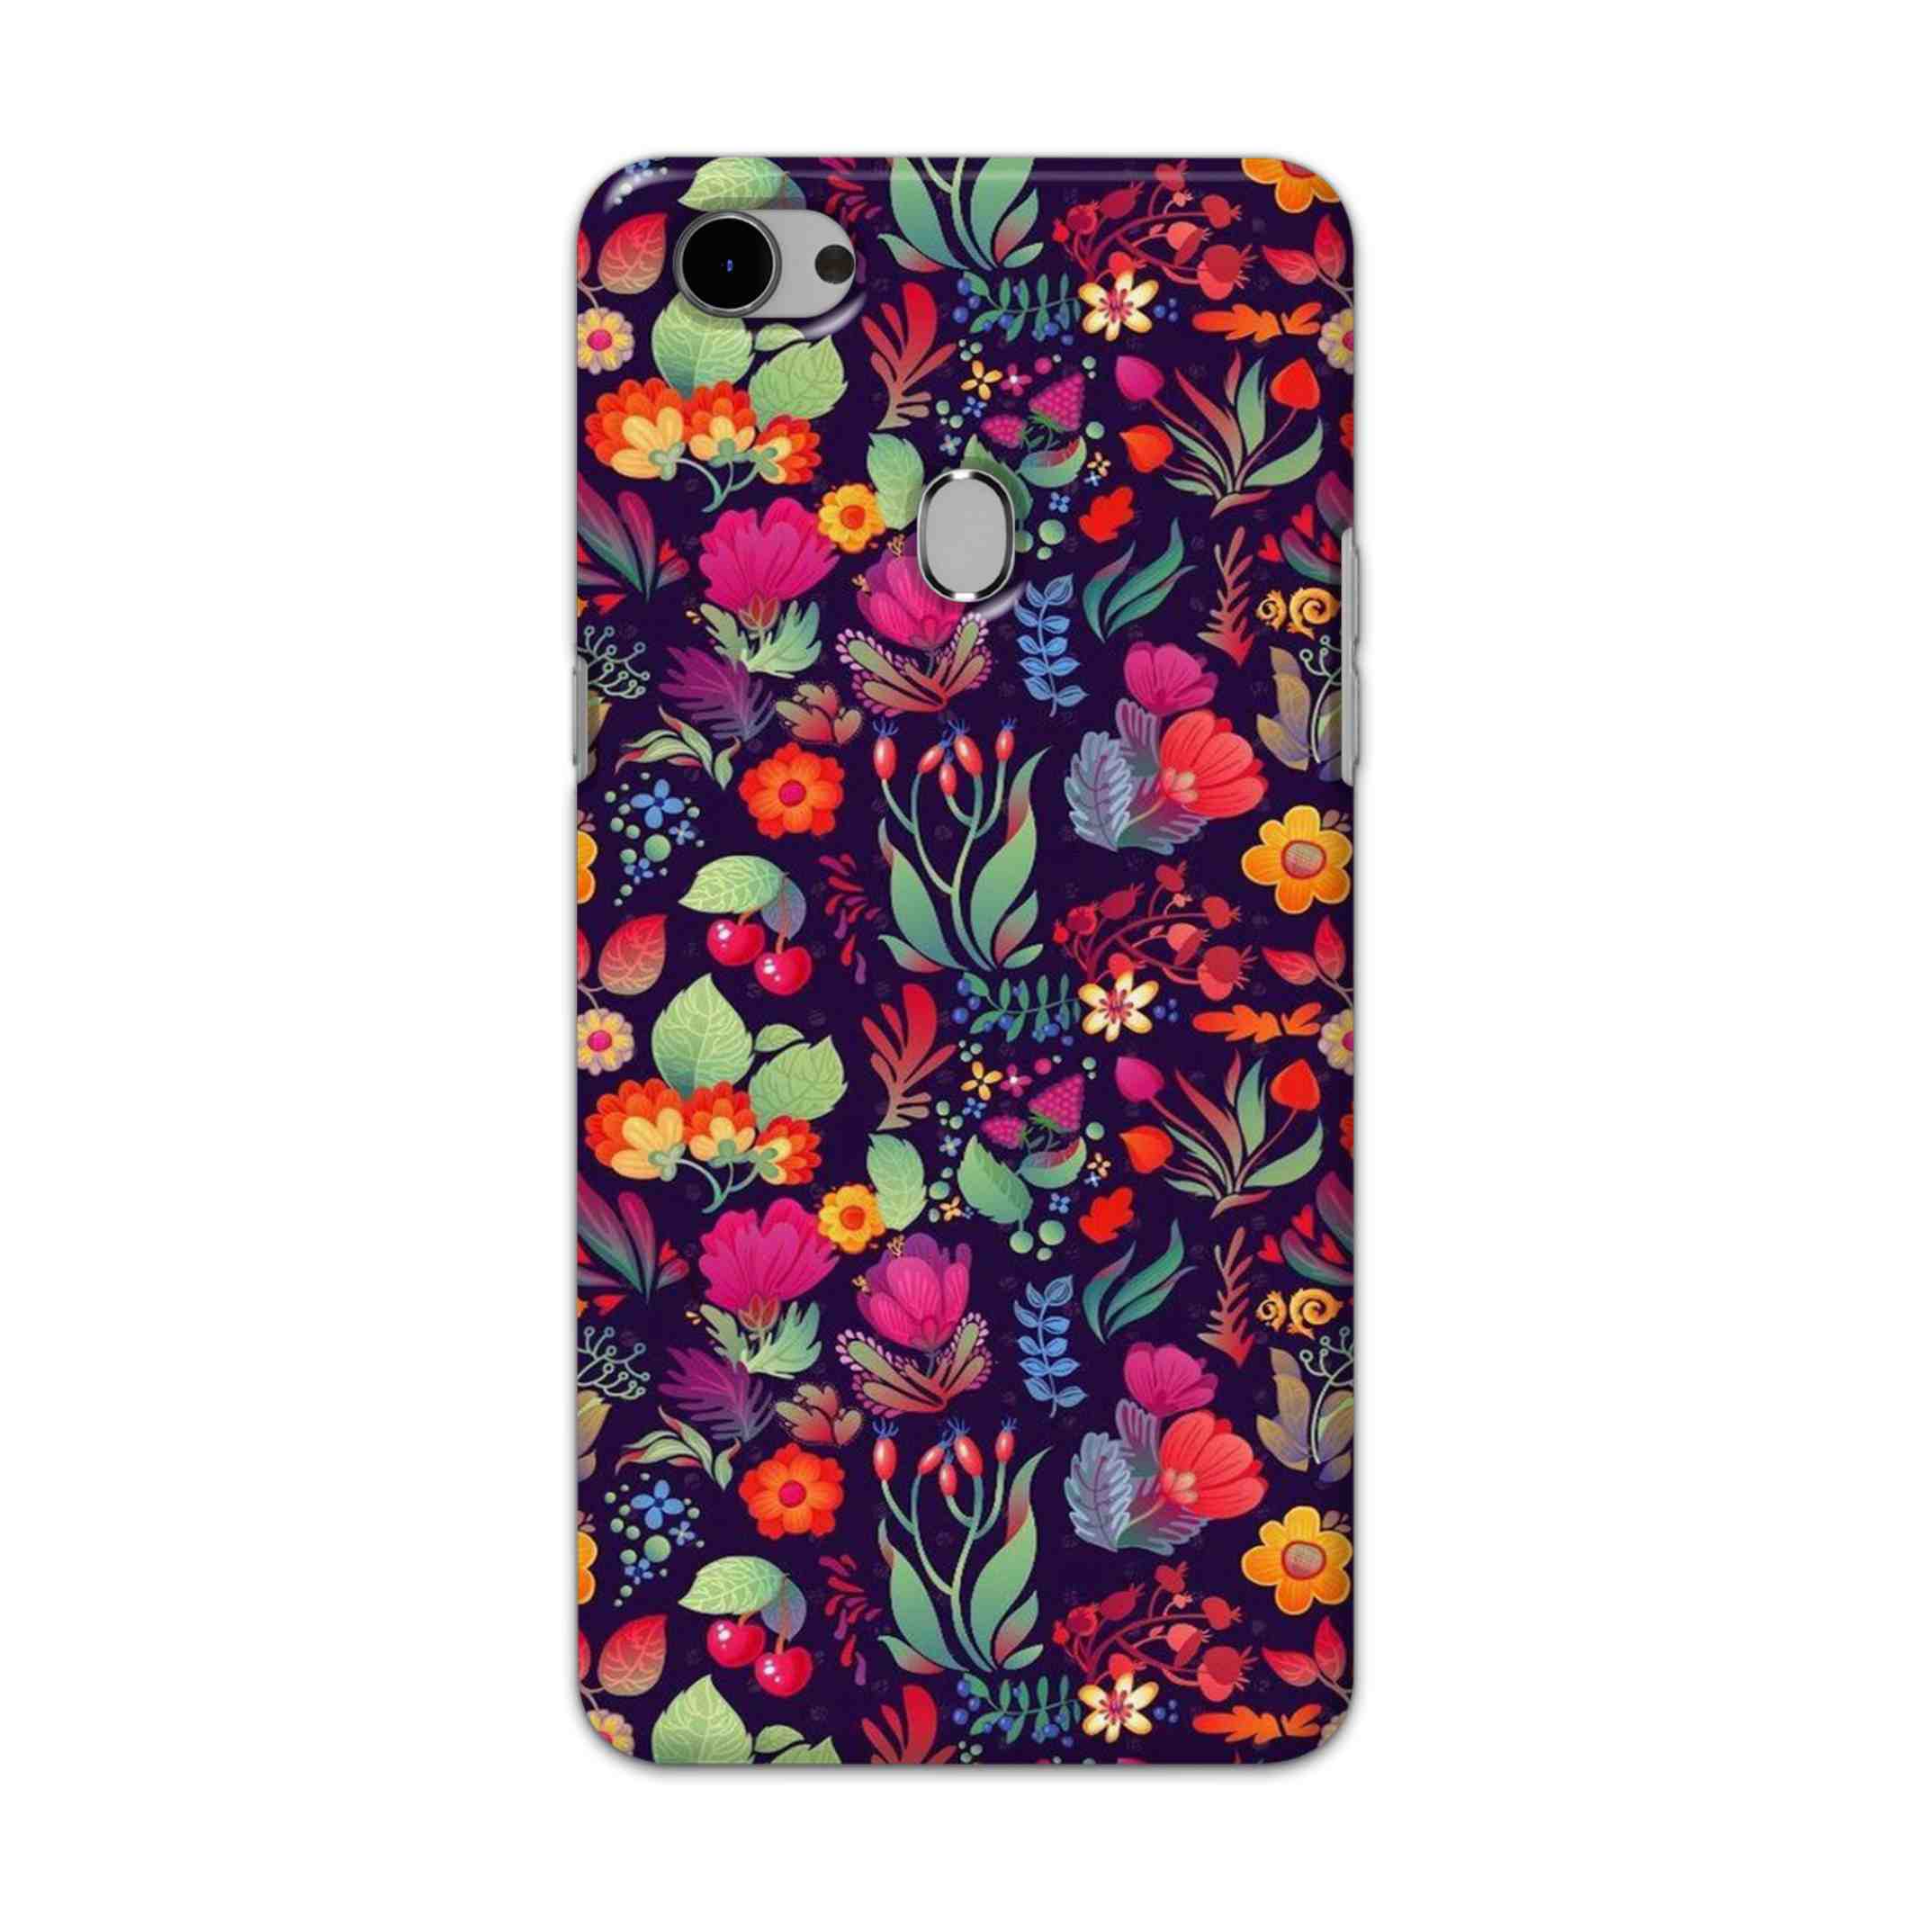 Buy Fruits Flower Hard Back Mobile Phone Case Cover For Oppo F7 Online